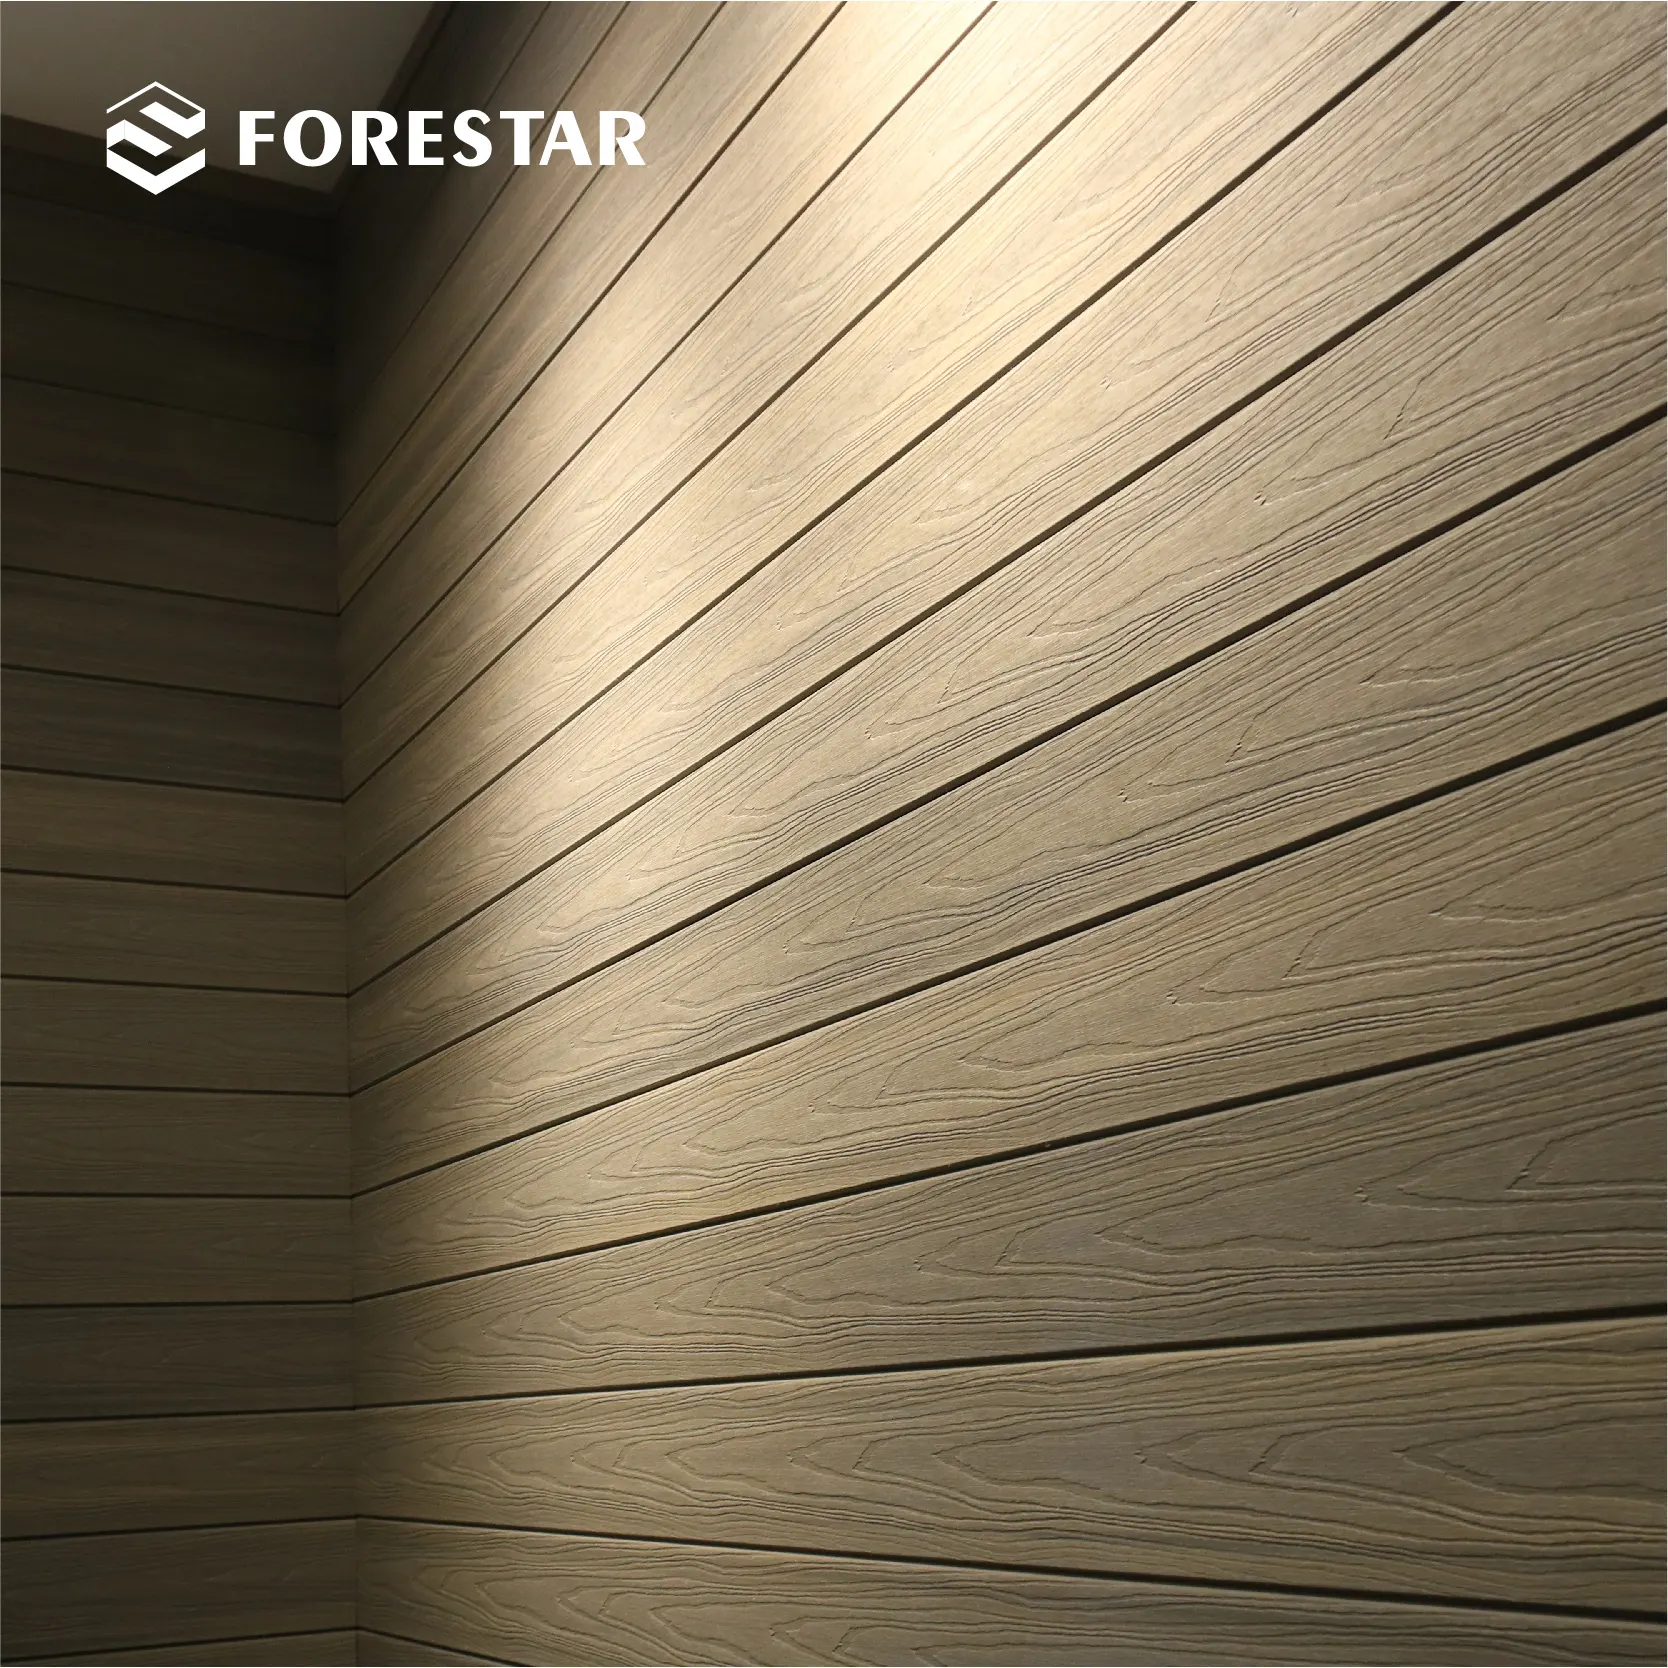 Produsen harga rendah GMT pelapis dinding batu pelapis dinding berongga kayu komposit plastik panel dinding